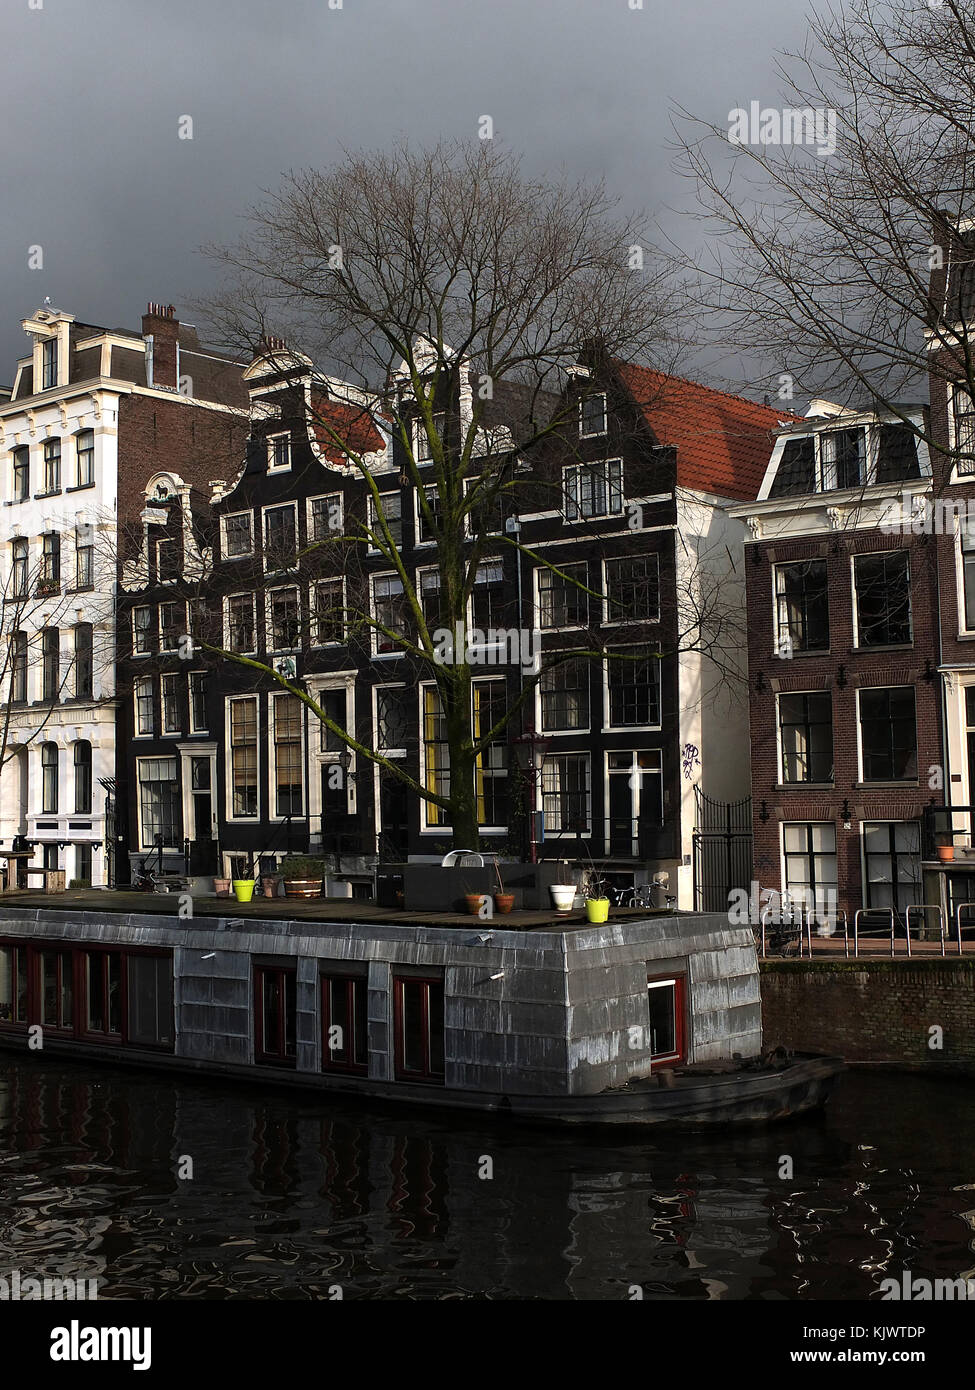 Amsterdam, capitale des Pays-Bas, la ville de Rembrandt, le Rijksmuseum, le musée Vincent van Gogh, port, vacances d'hiver, 17e siècle, maisons élégantes, Banque D'Images